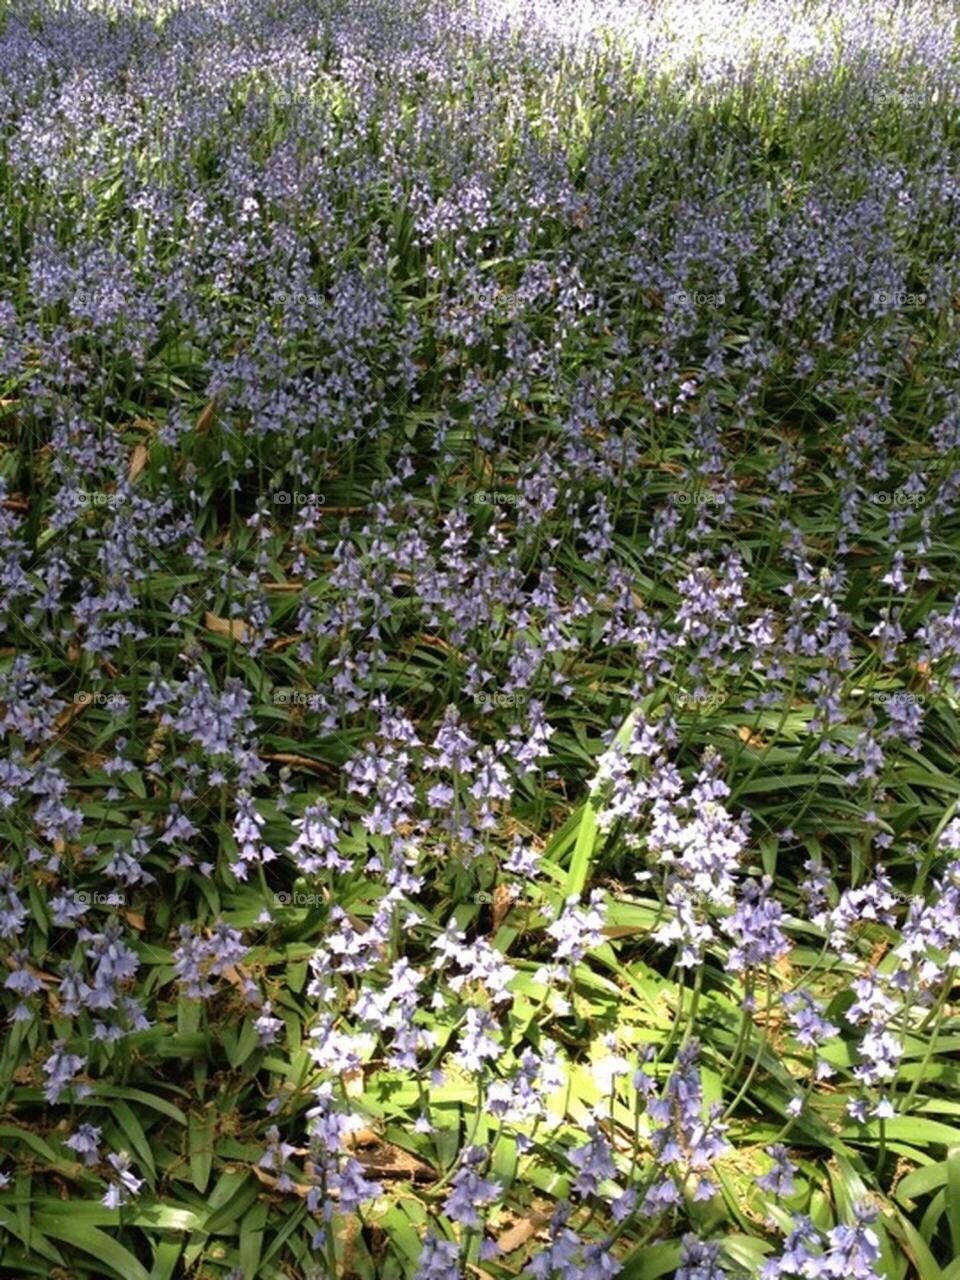 Lilacs in a field